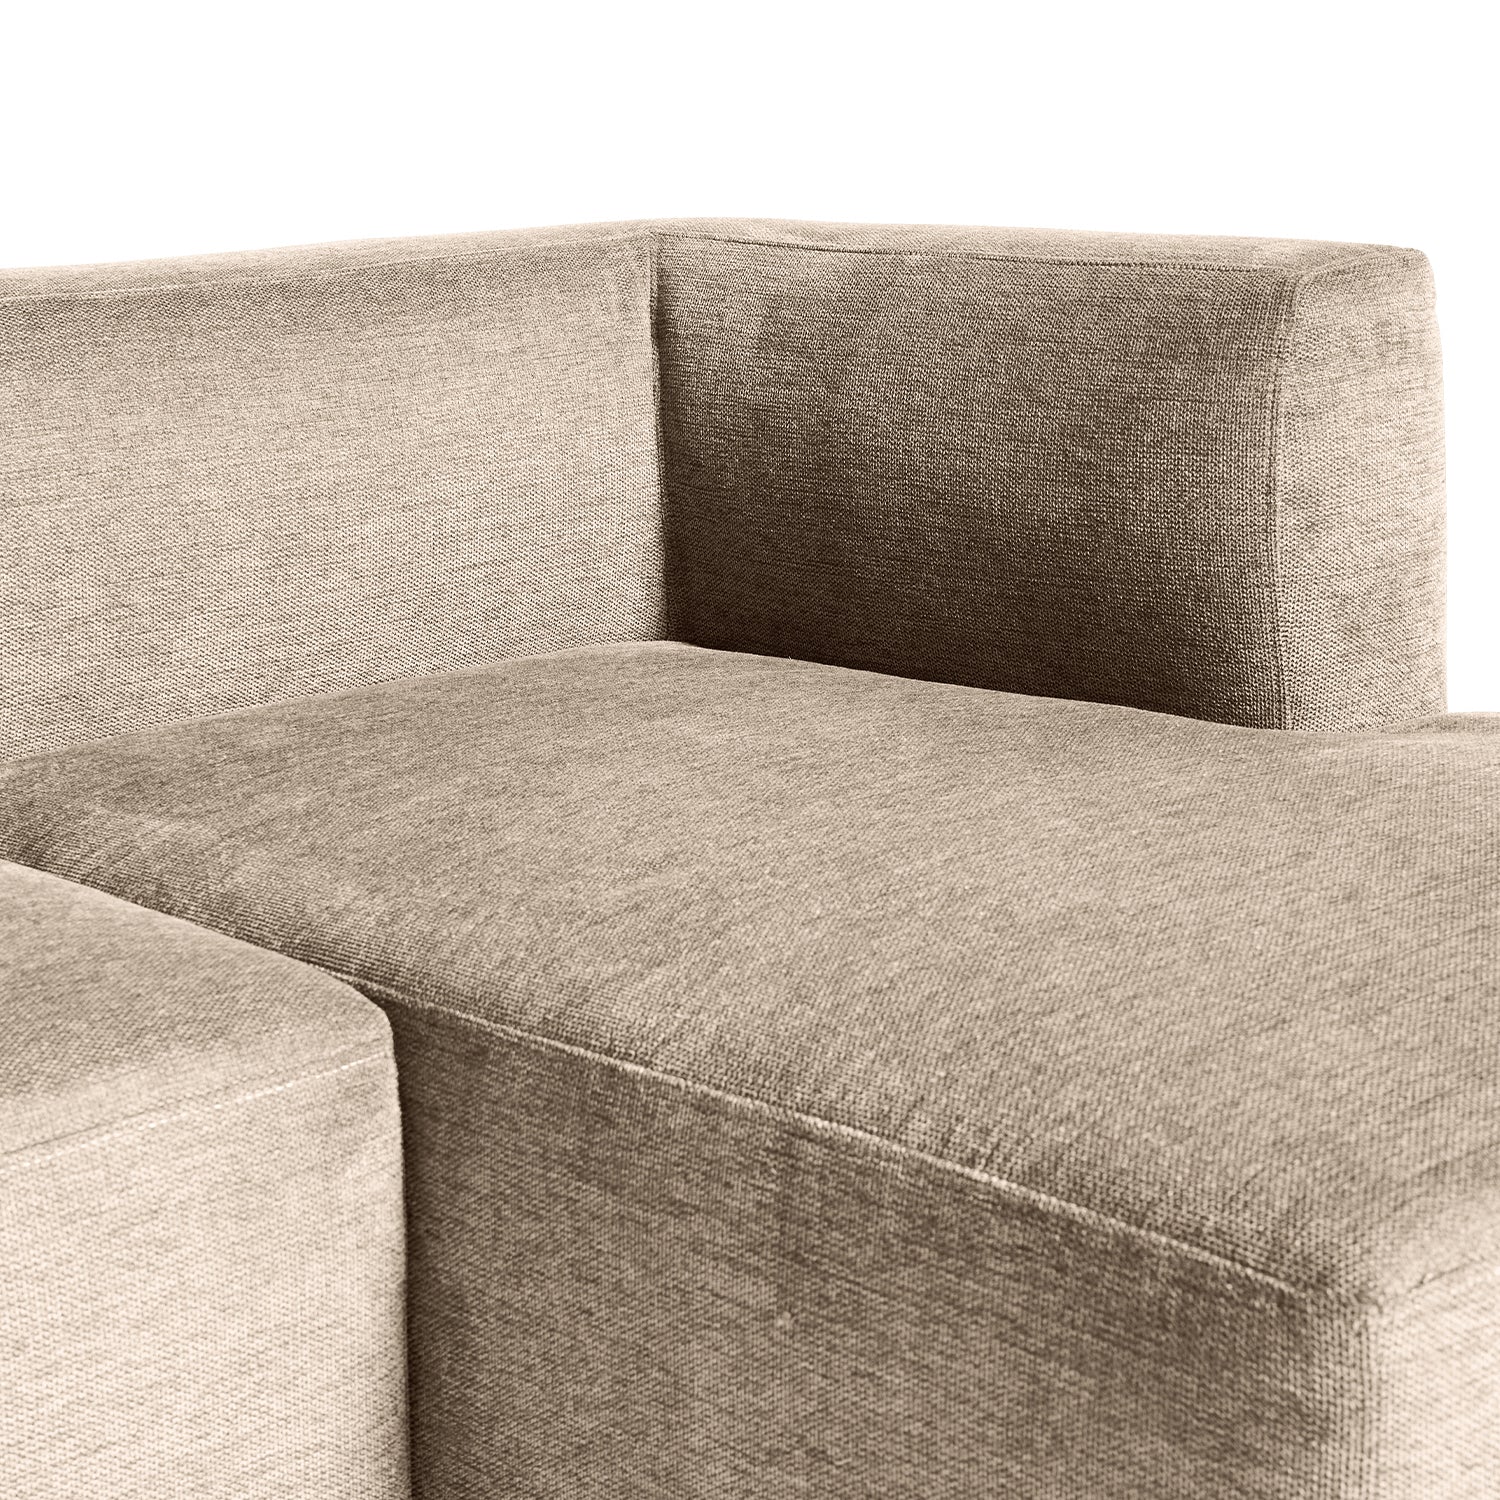 Roma chaiselong sofa højrevendt - Møbelkompagniet